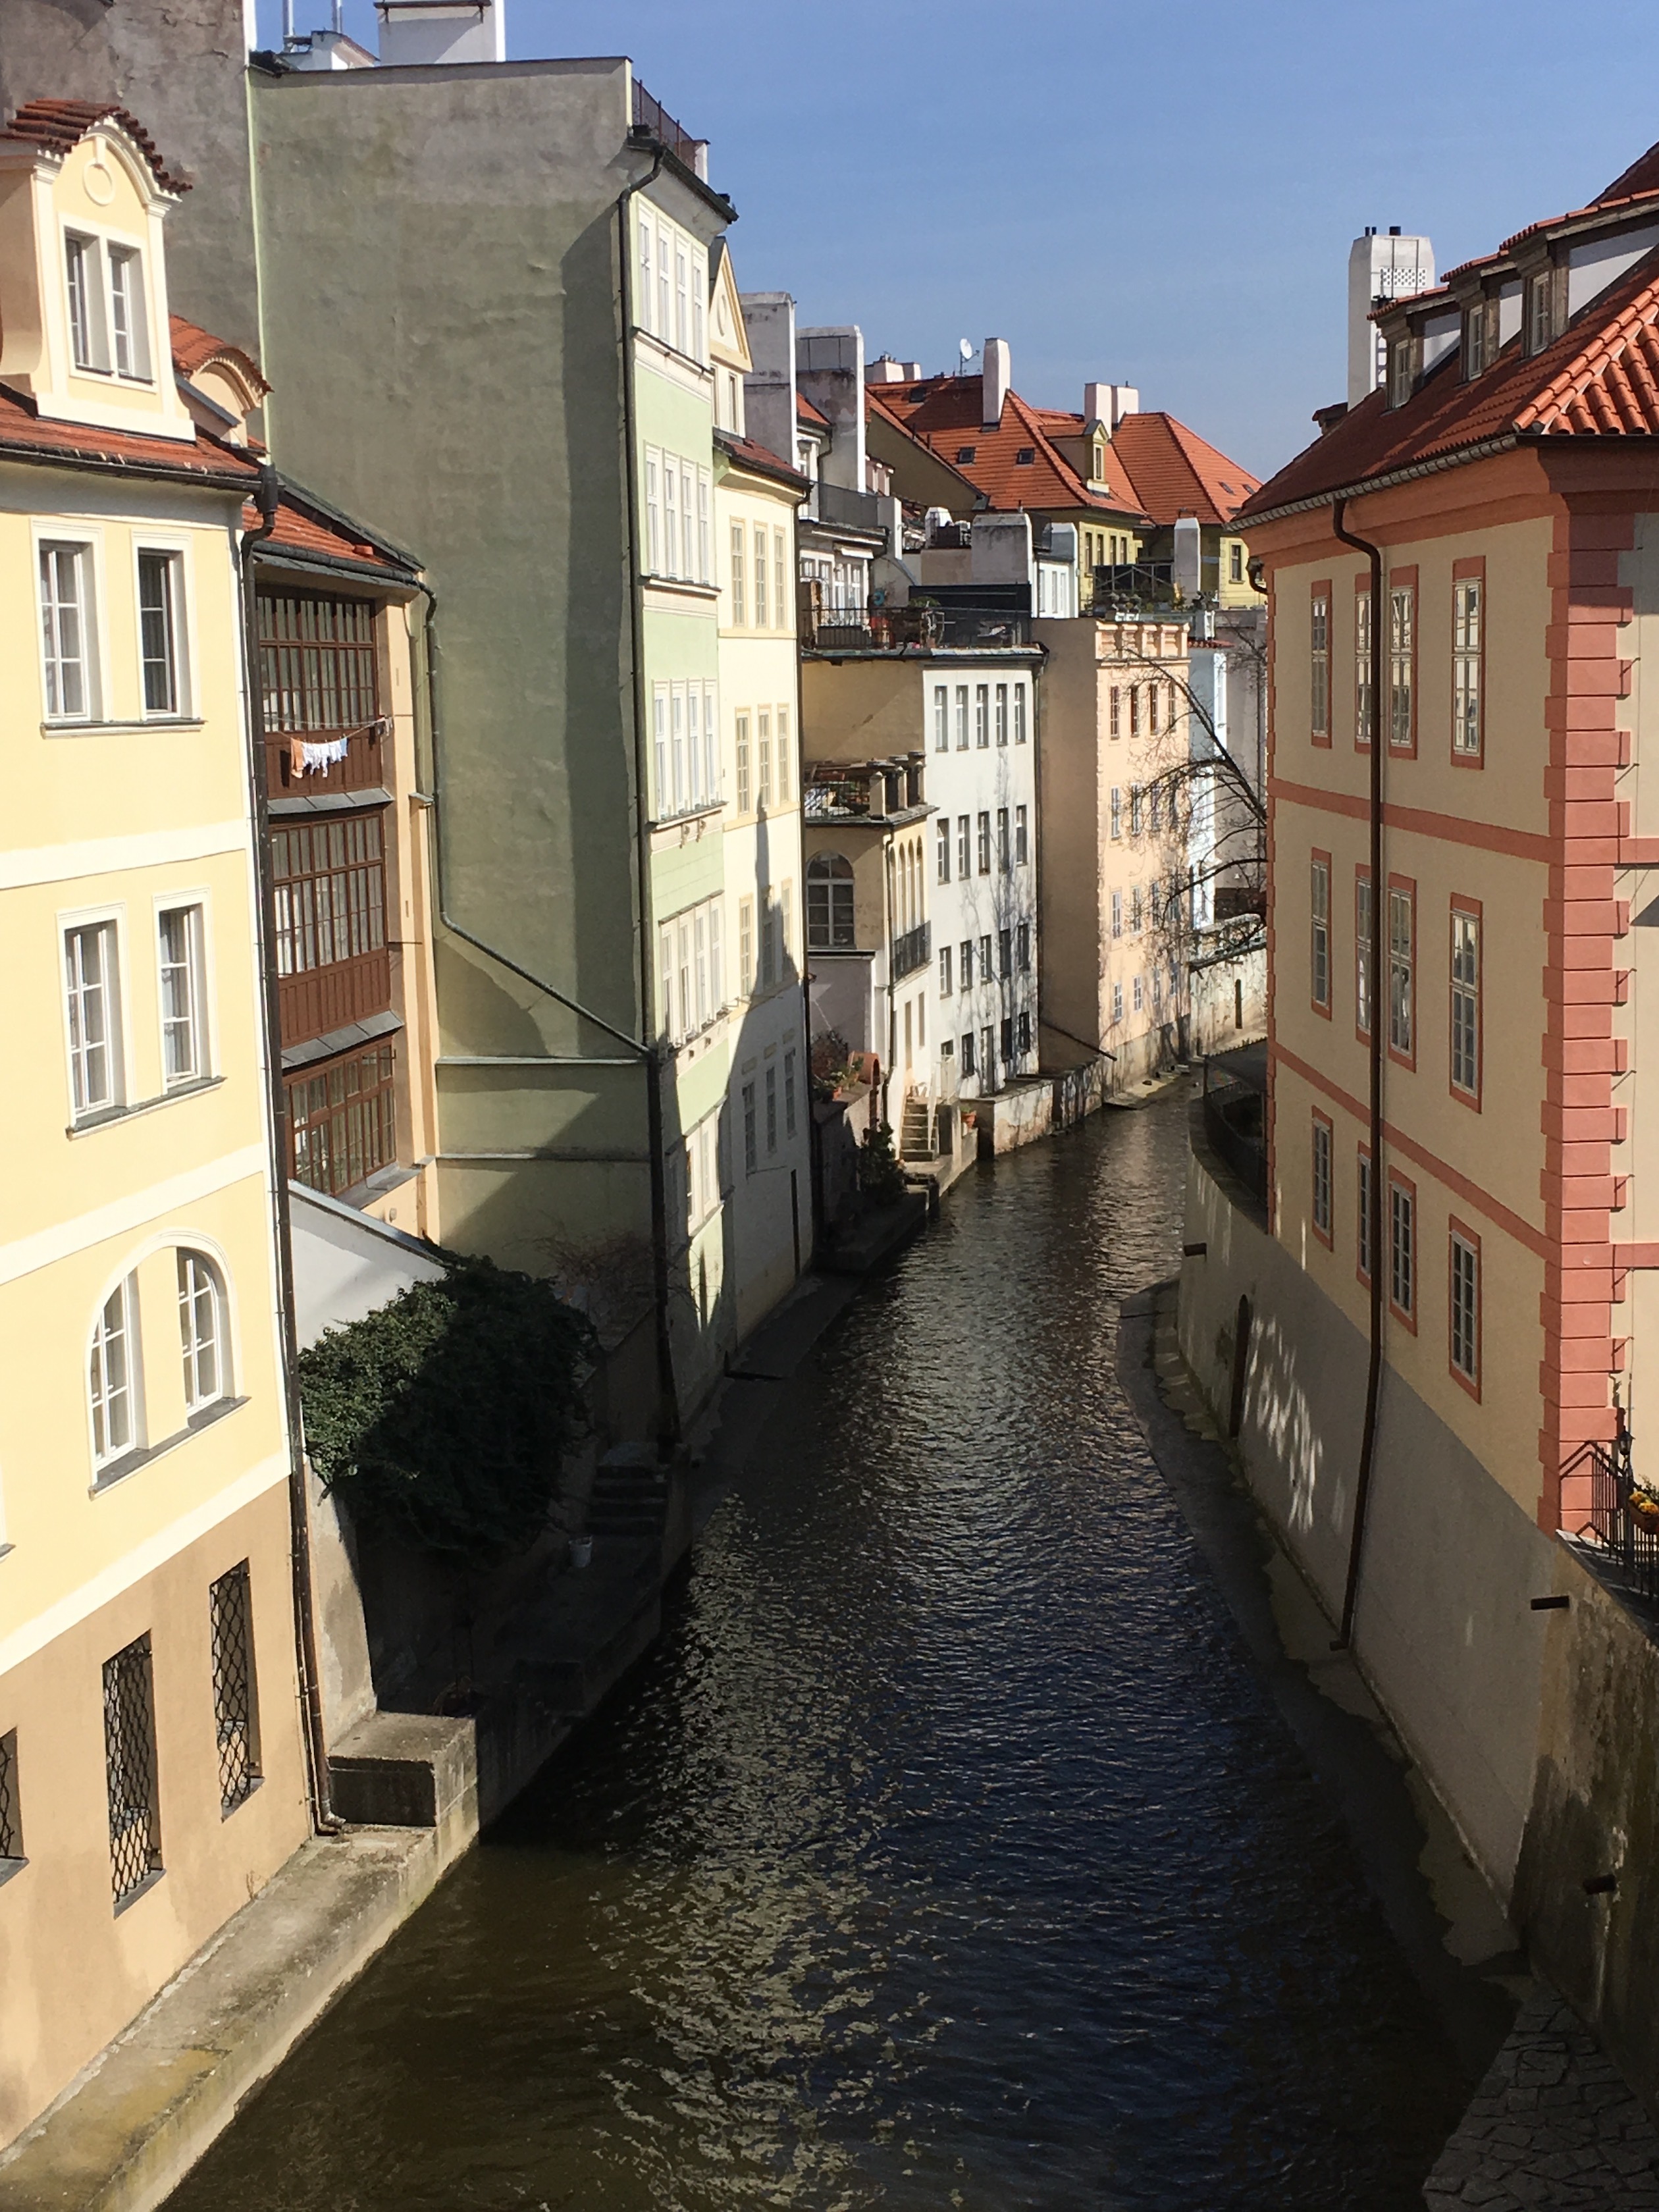 布拉格小城區裡的小運河